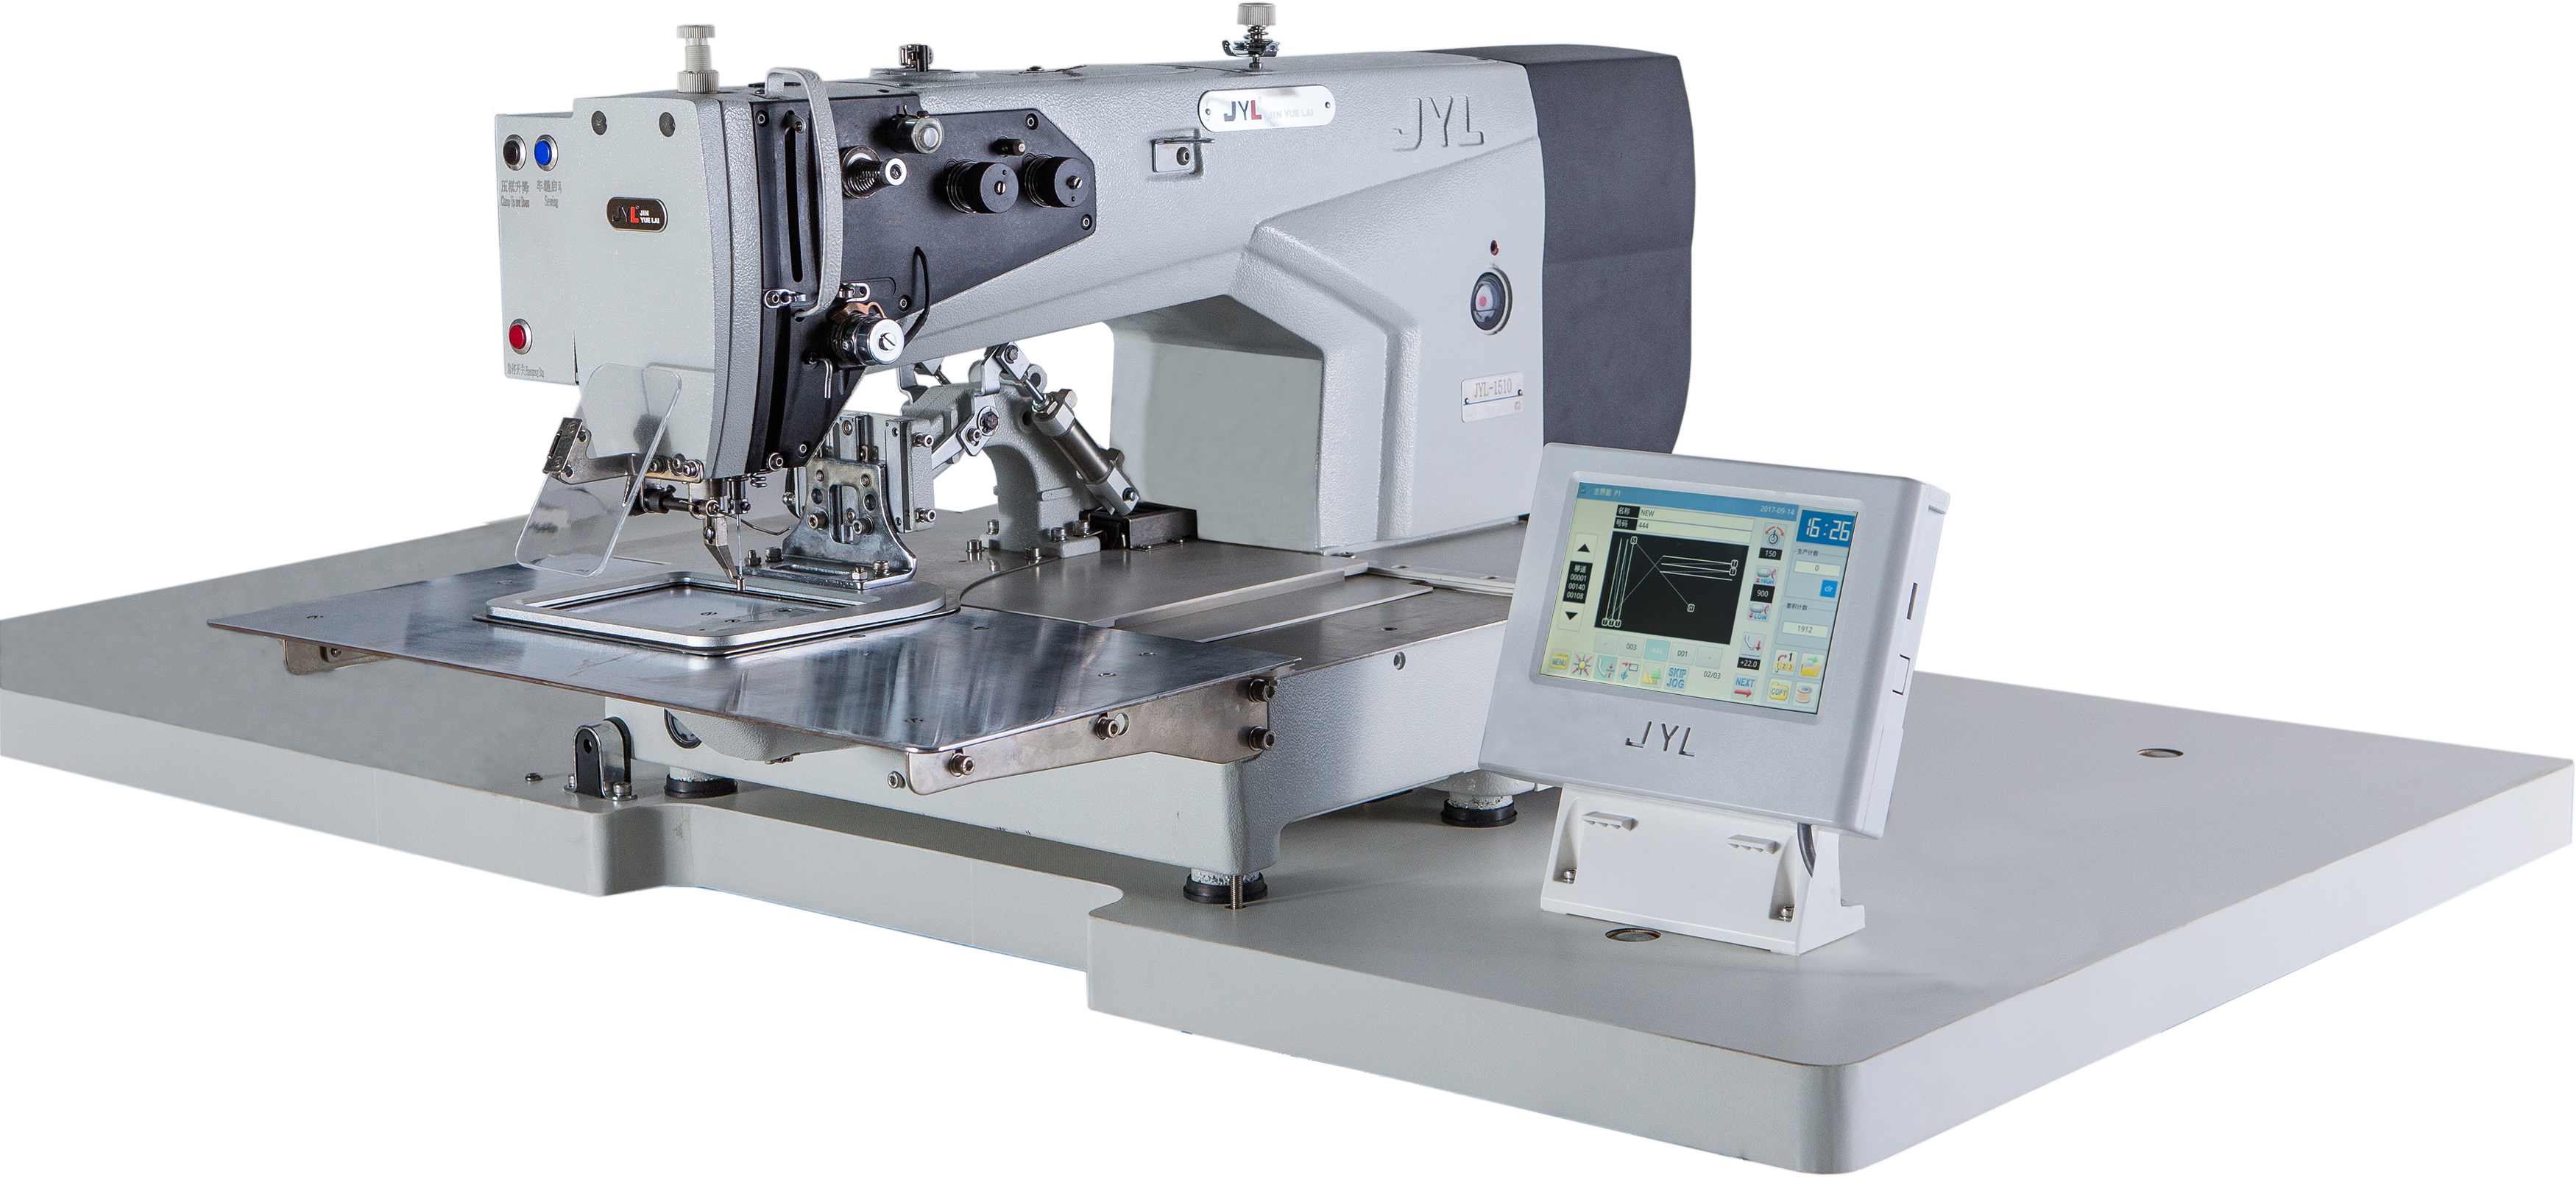 Автоматическая промышленный шаблон Швейная машина для кожаных изделий Джил-G1510